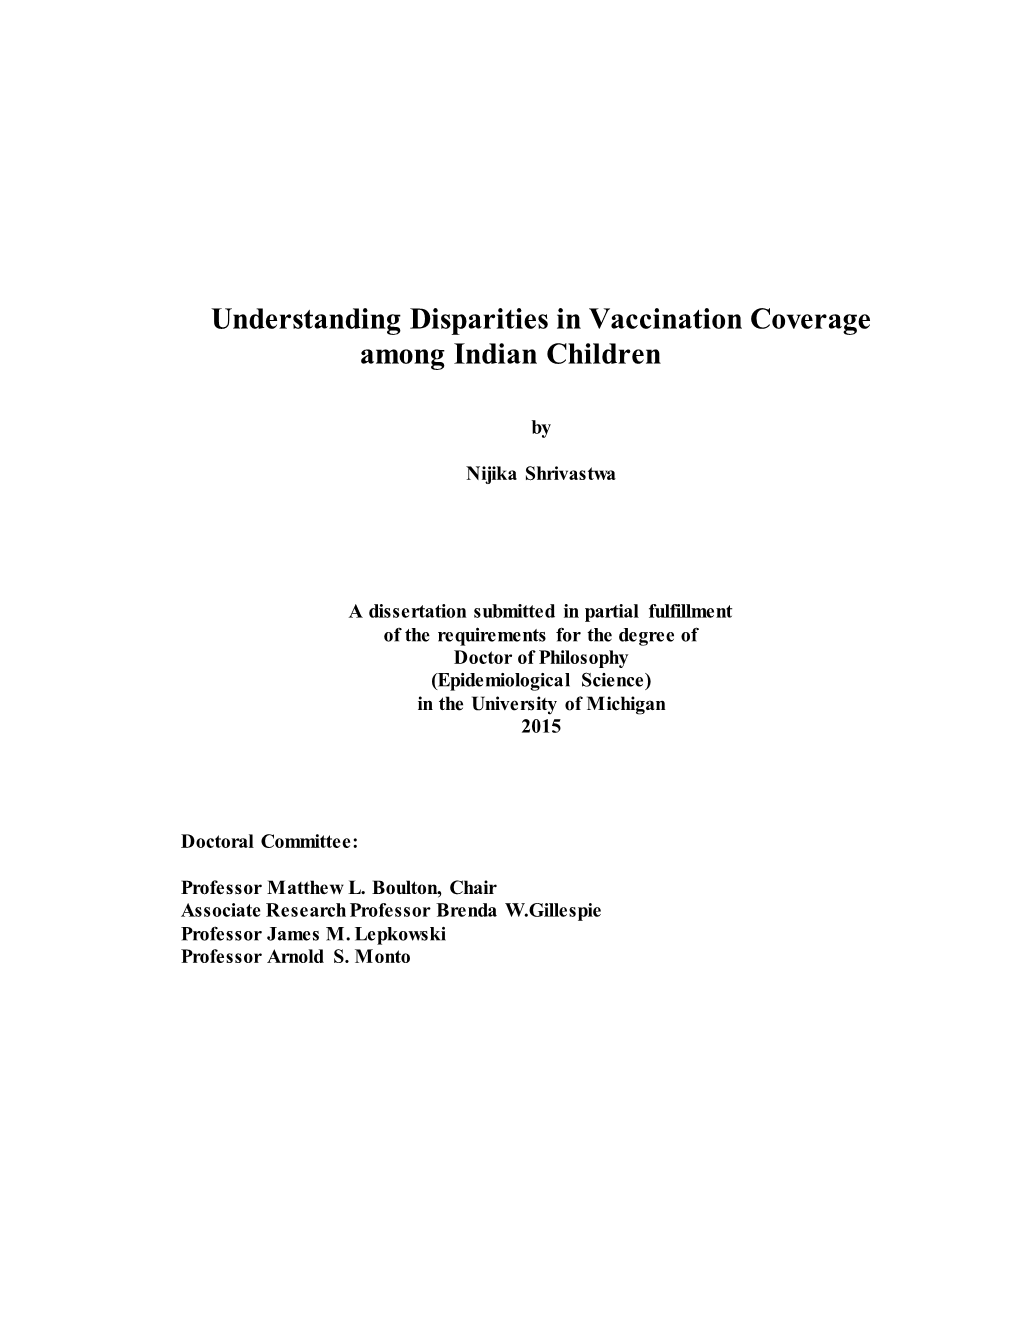 Understanding Disparities in Vaccination Coverage Among Indian Children